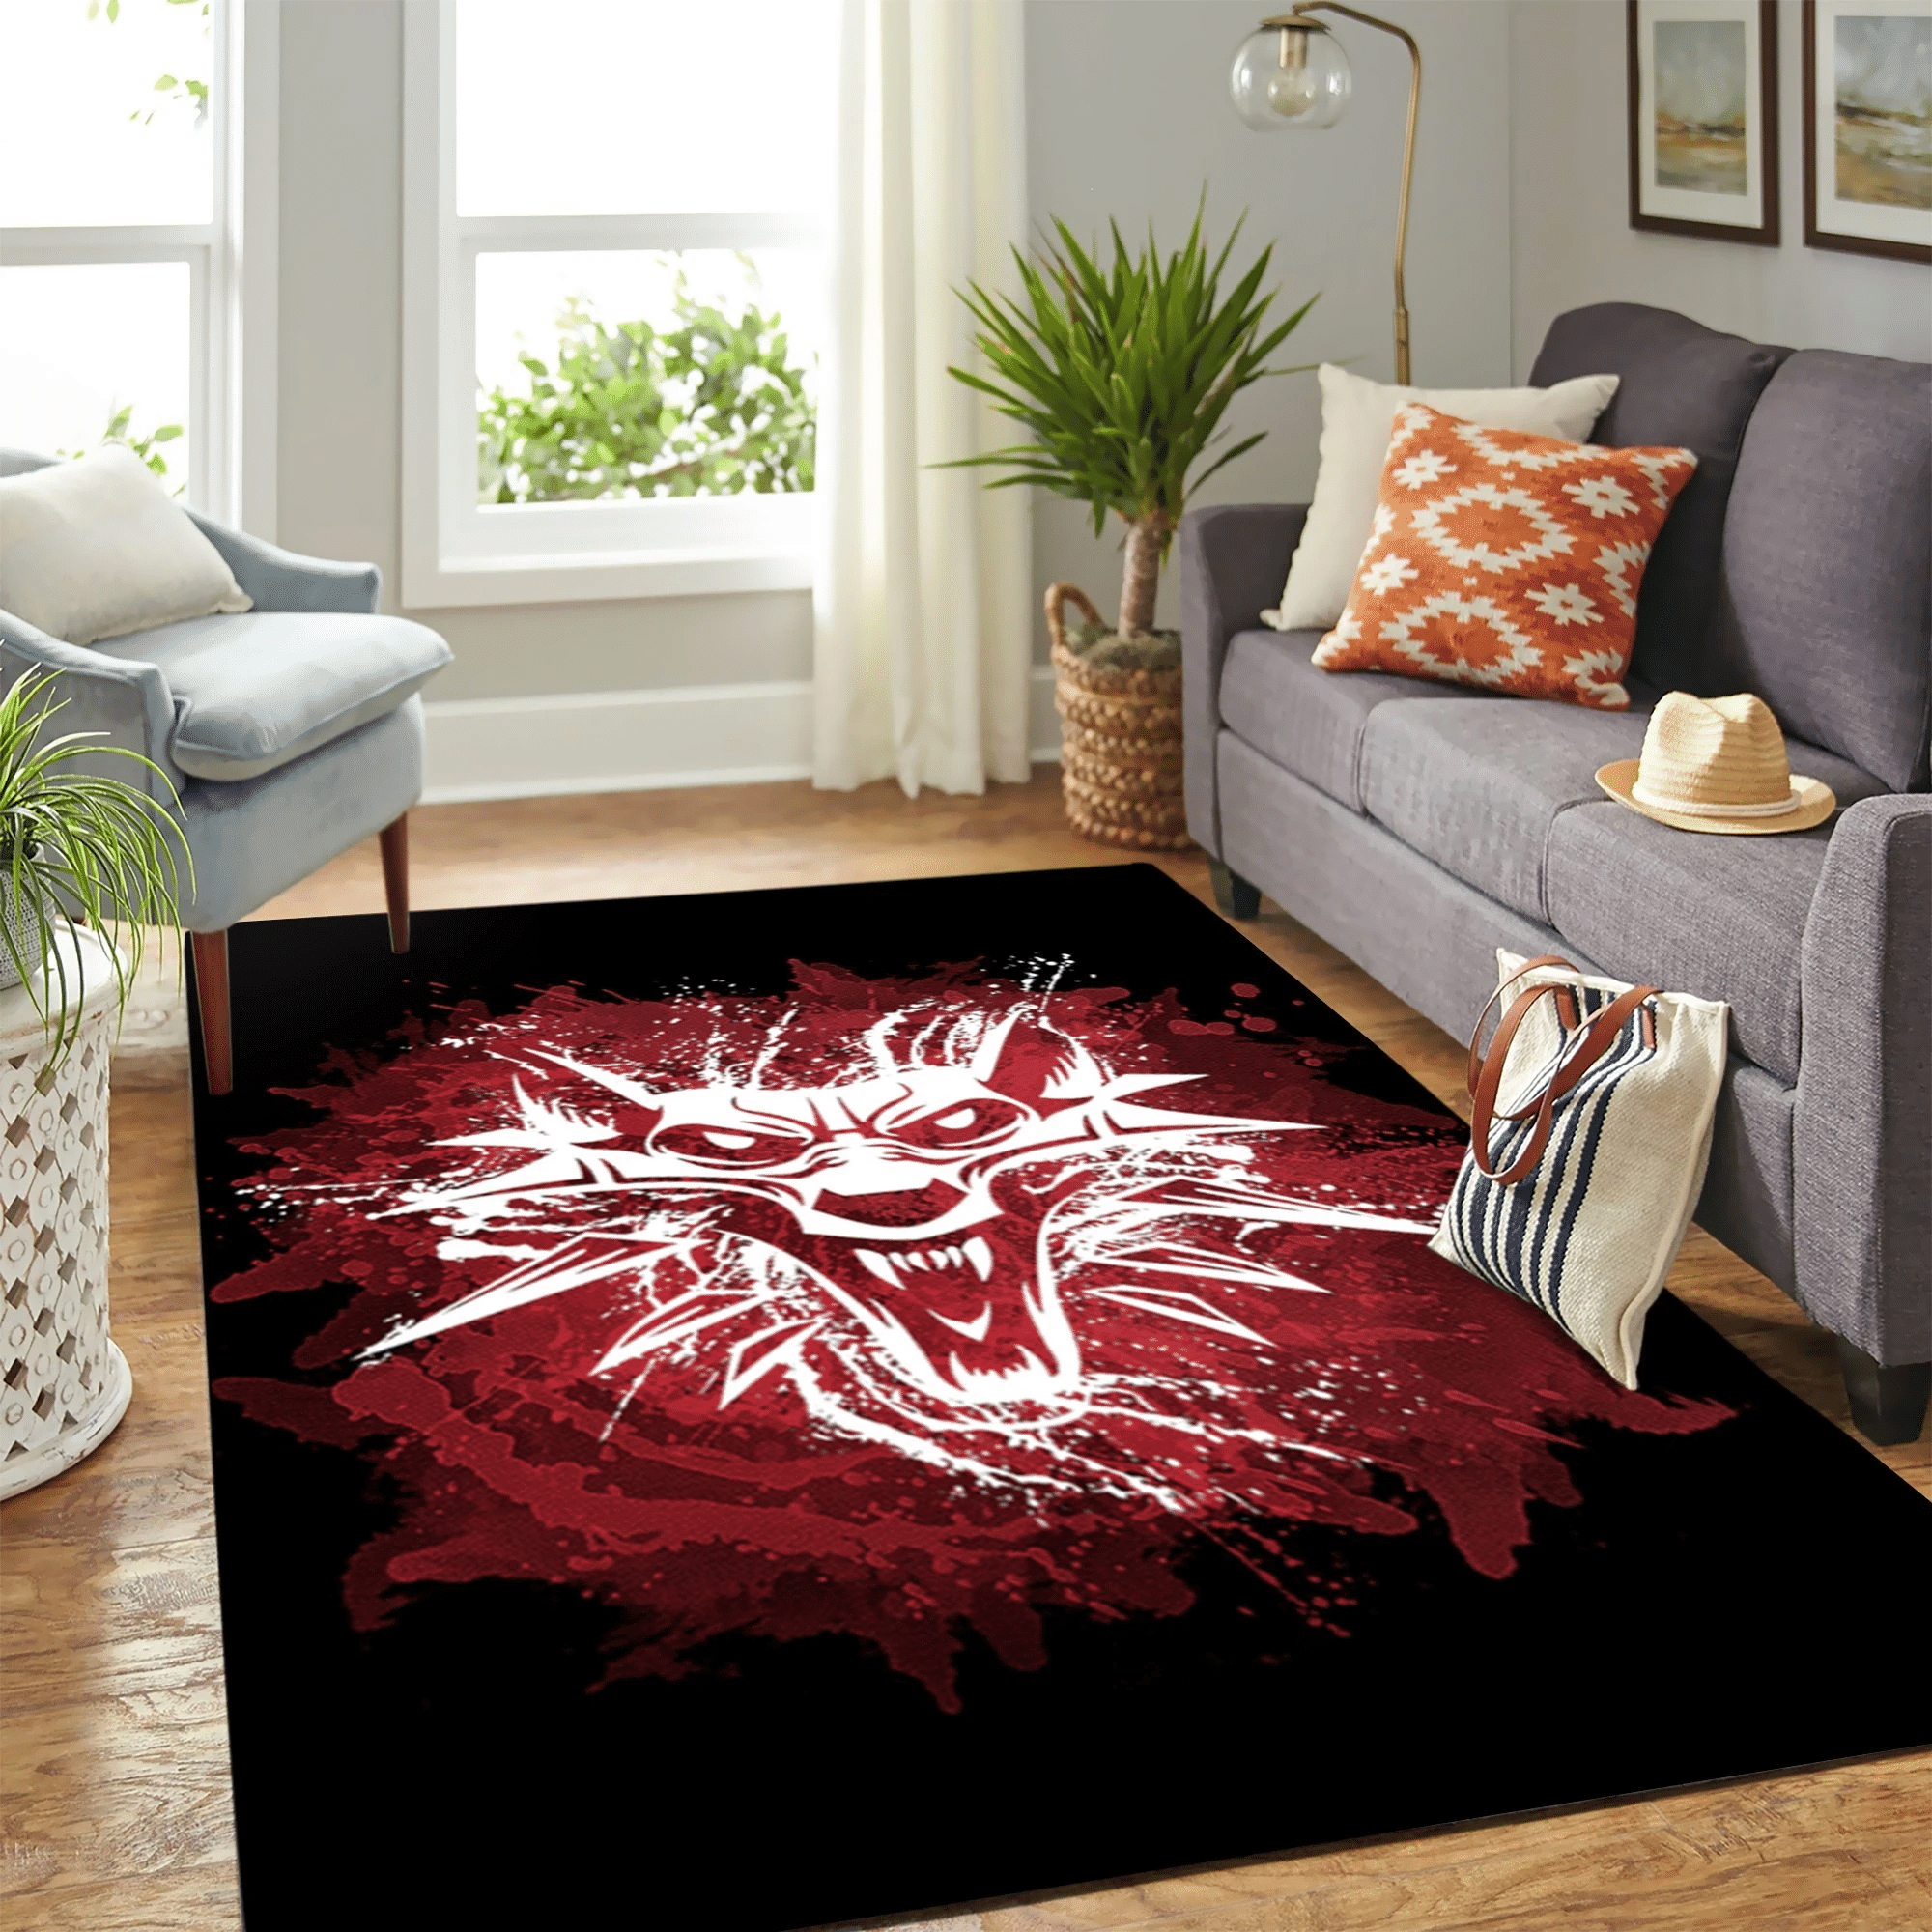 The Witcher Red Wolf Carpet Floor Area Rug Chrismas Gift - Indoor Outdoor Rugs